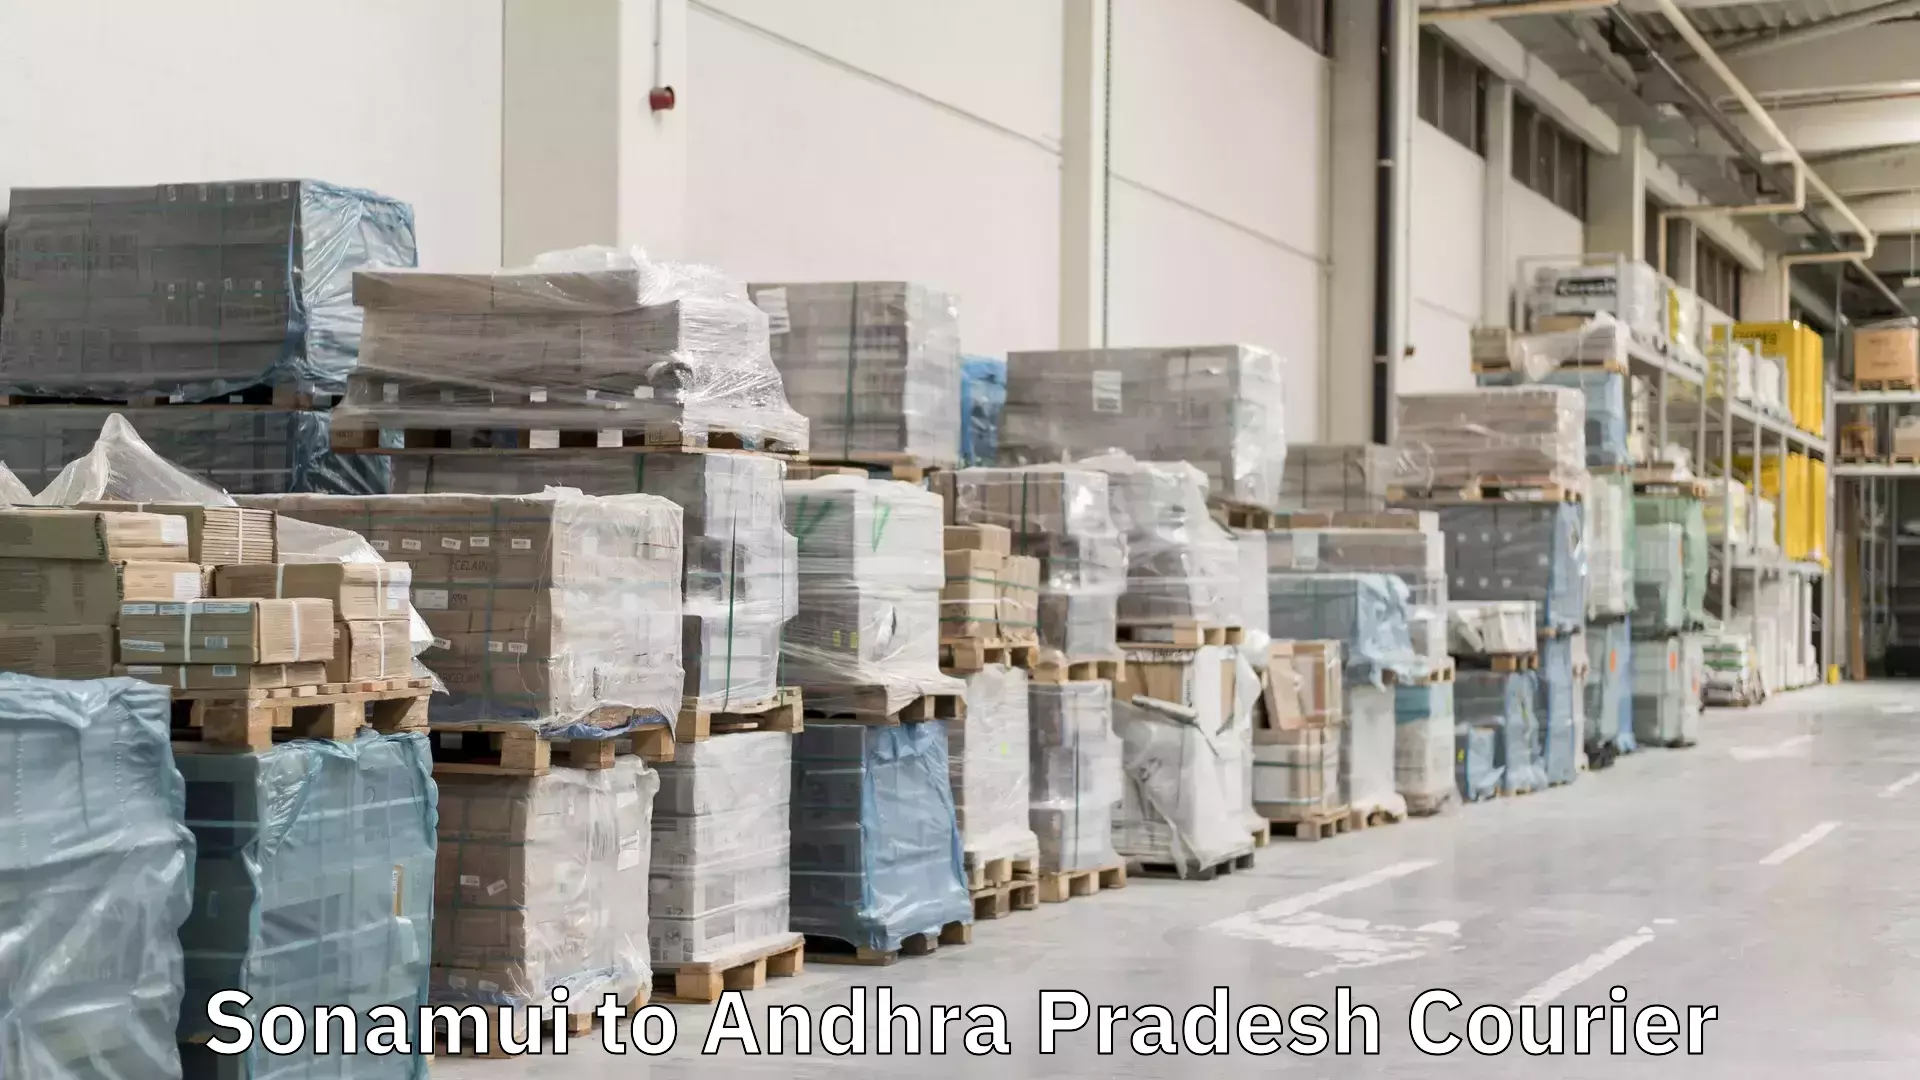 Express logistics Sonamui to Andhra Pradesh